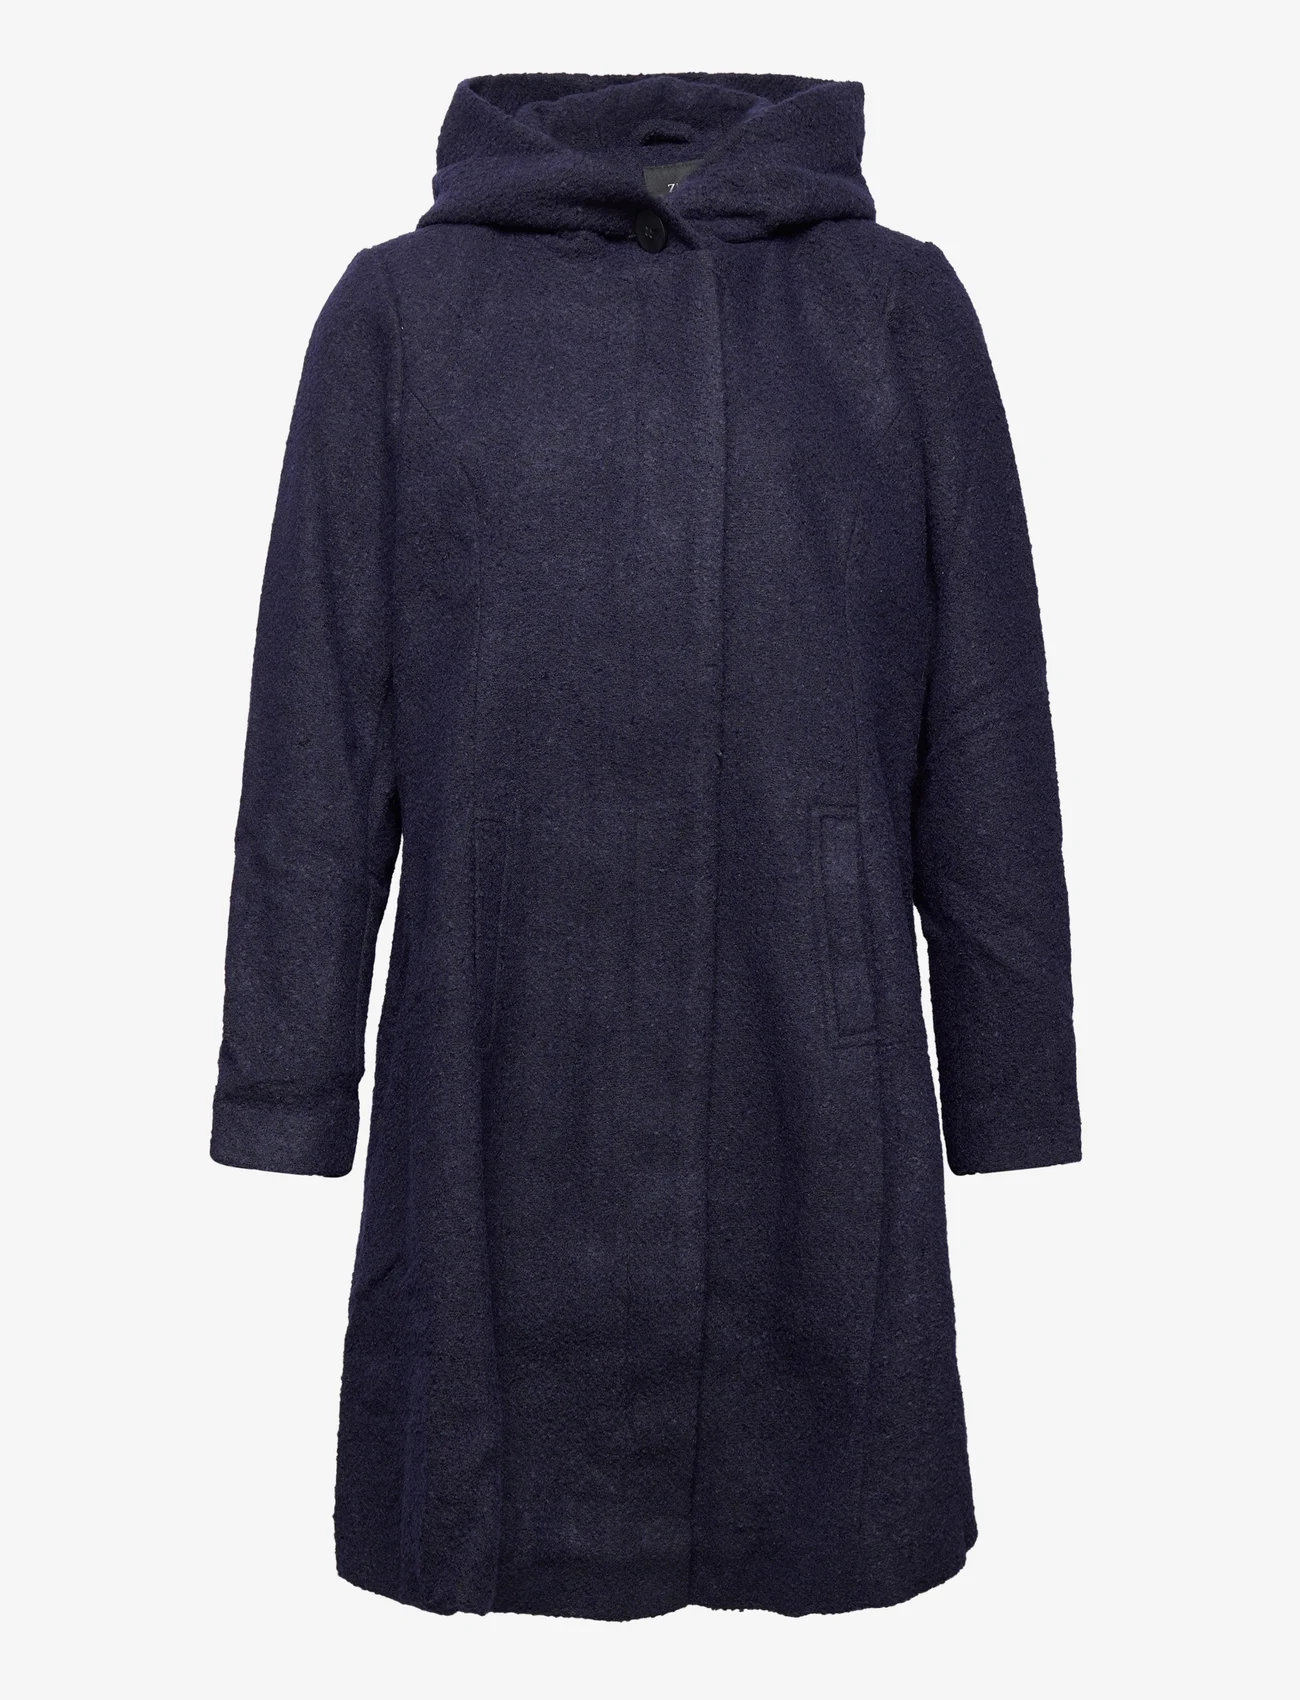 Zizzi - MCHARLENE, L/S, COAT - winter coats - dark blue - 0